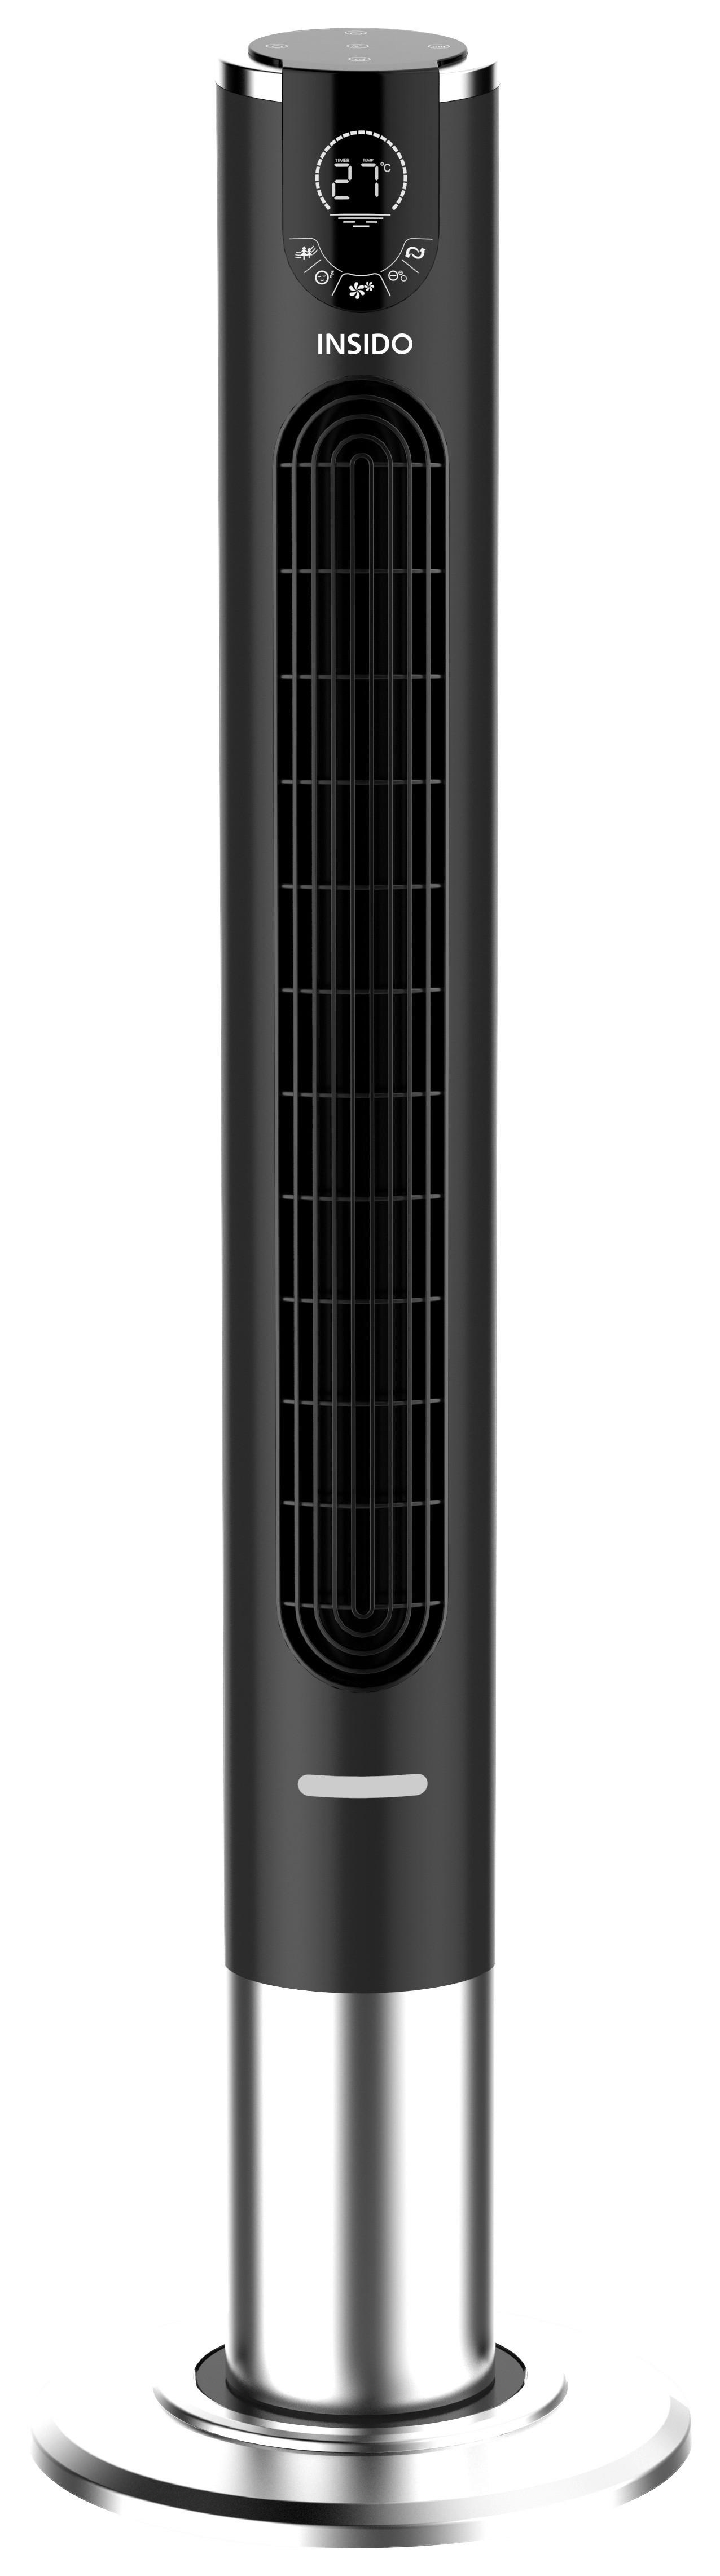 Sloupový Ventilátor Hademar - černá/barvy nerez oceli, Moderní, plast (32/114cm) - Insido